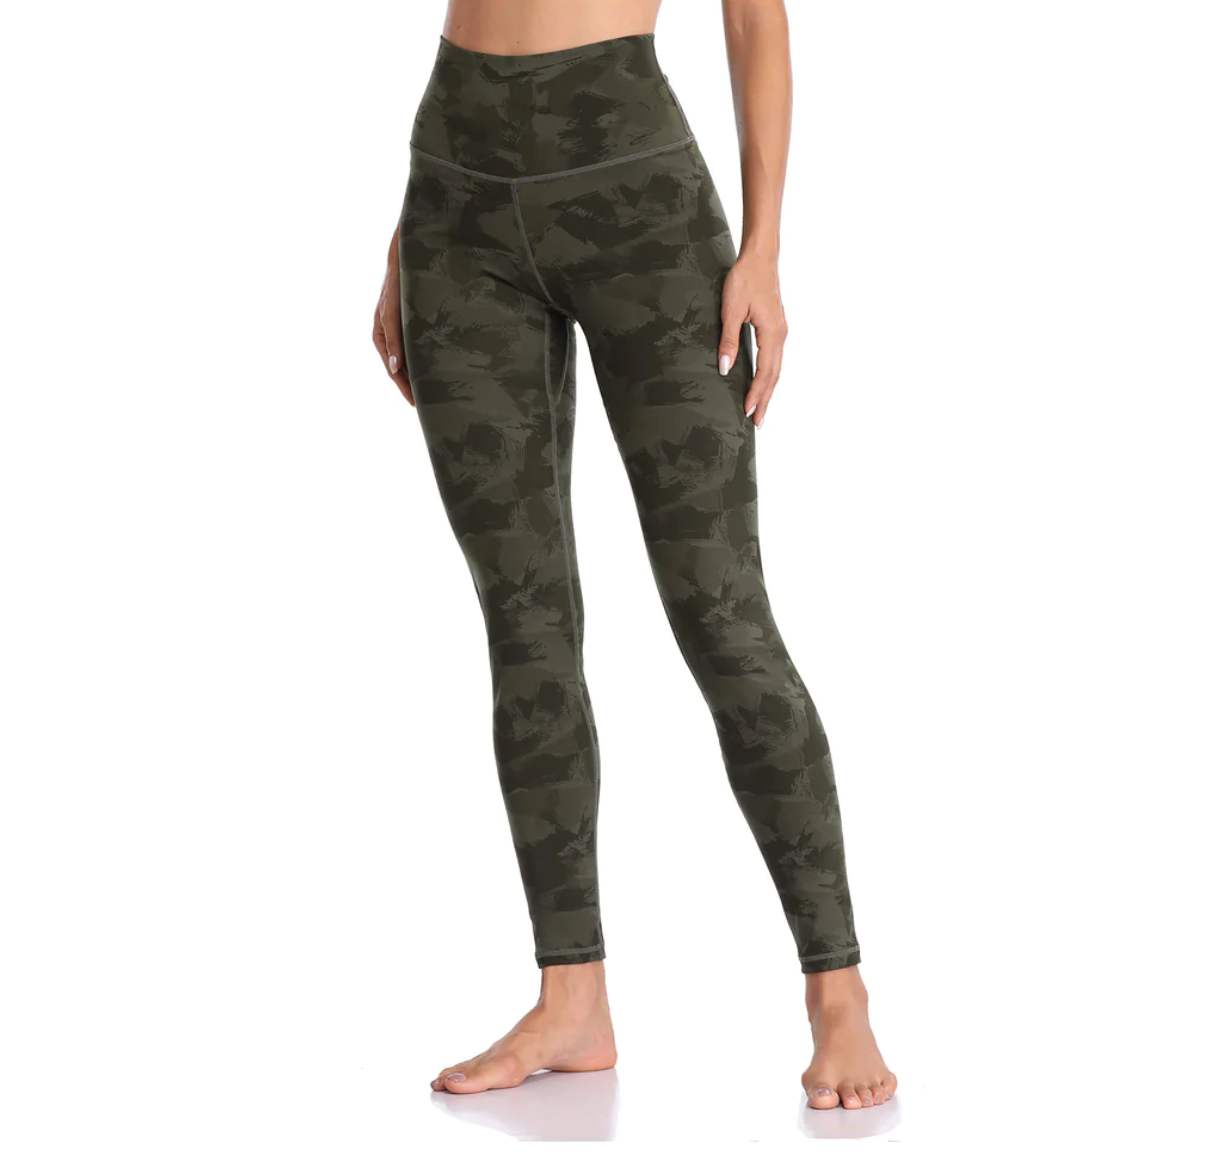 Colorfulkoala High Waisted Yoga Pants 7/8 Length Leggings Pockets XS Camo  Green